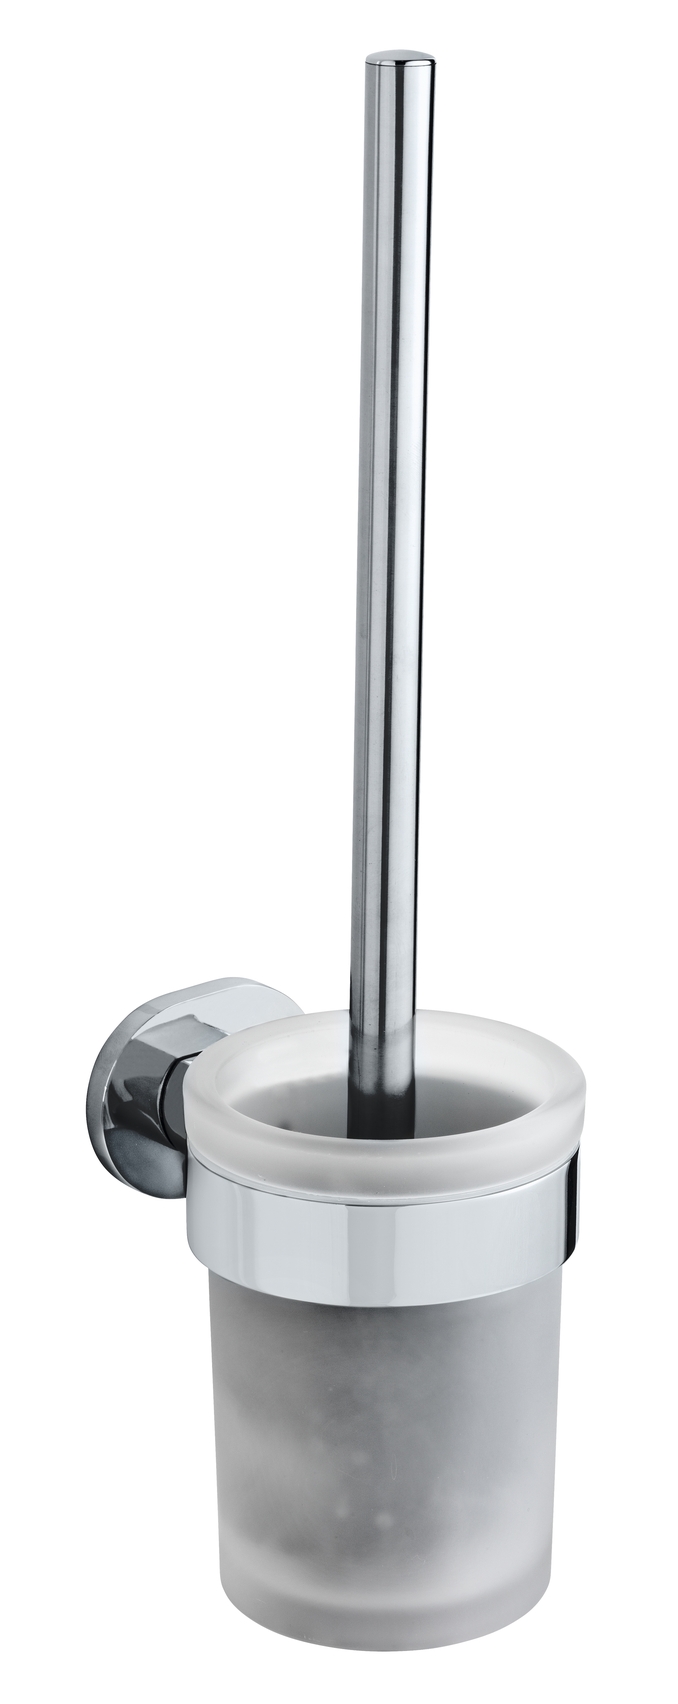 Wenko UV-Loc WC-Garnitur Maribor 9,5 x 36,5 x 11,5 cm, satiniertes Glas/silber glänzend. Befestigen ohne Bohren